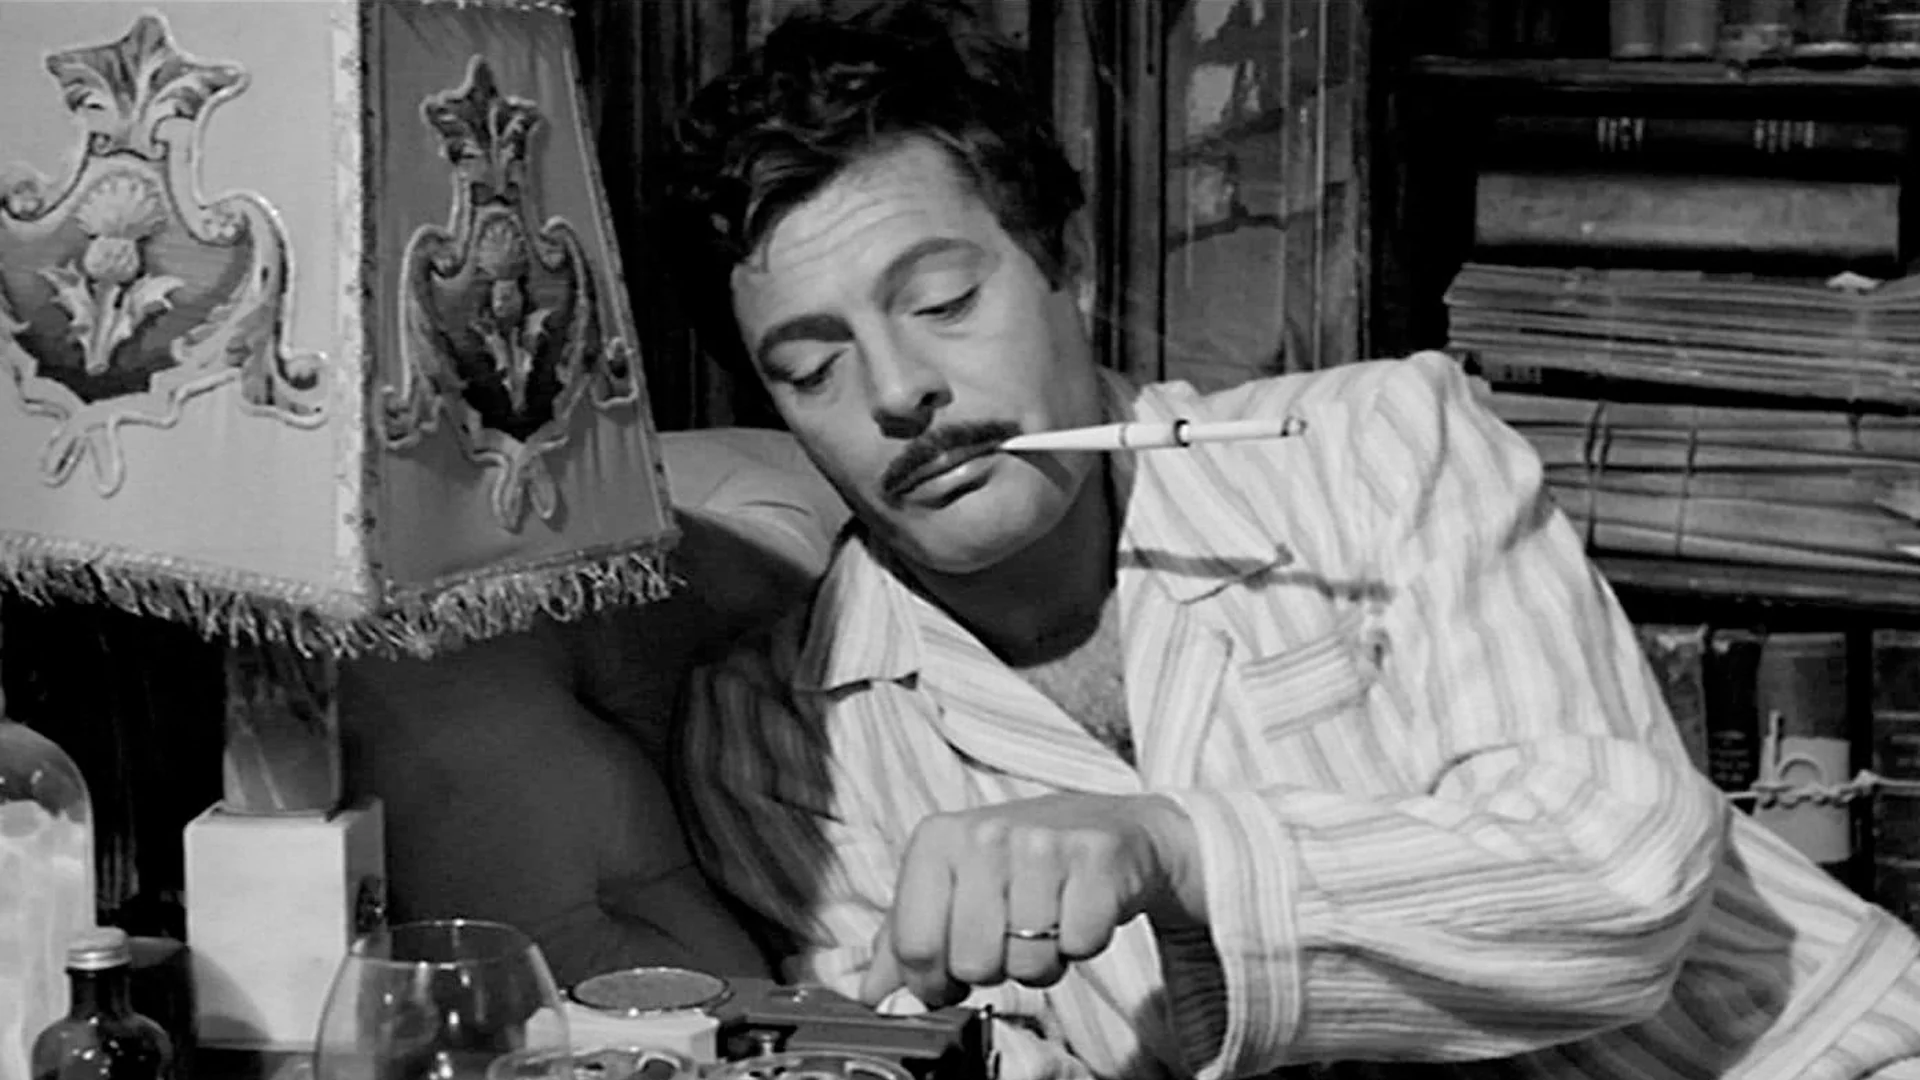 Marcello Mastroianni con una sigaretta in bocca